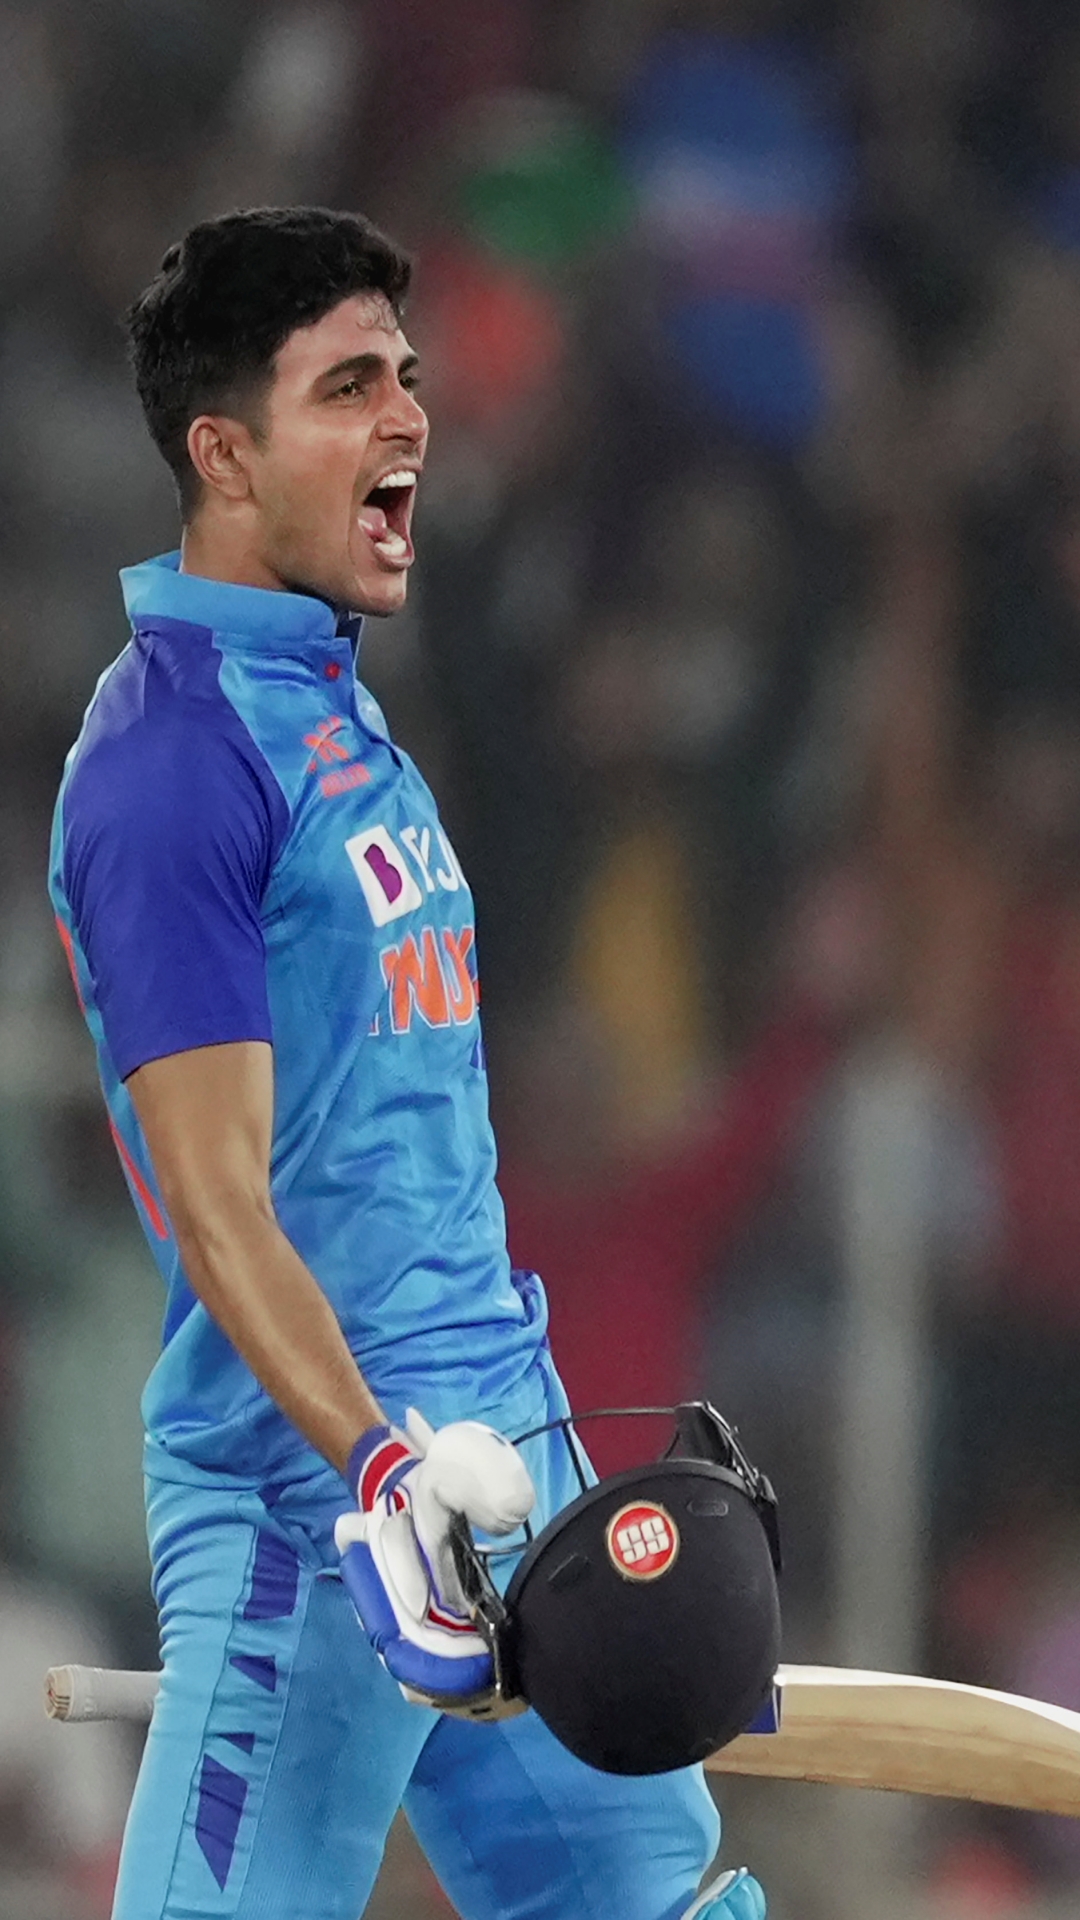 एक टी20 पारी में सबसे ज्यादा रन बनाने वाले भारतीय बल्लेबाजों की लिस्ट 